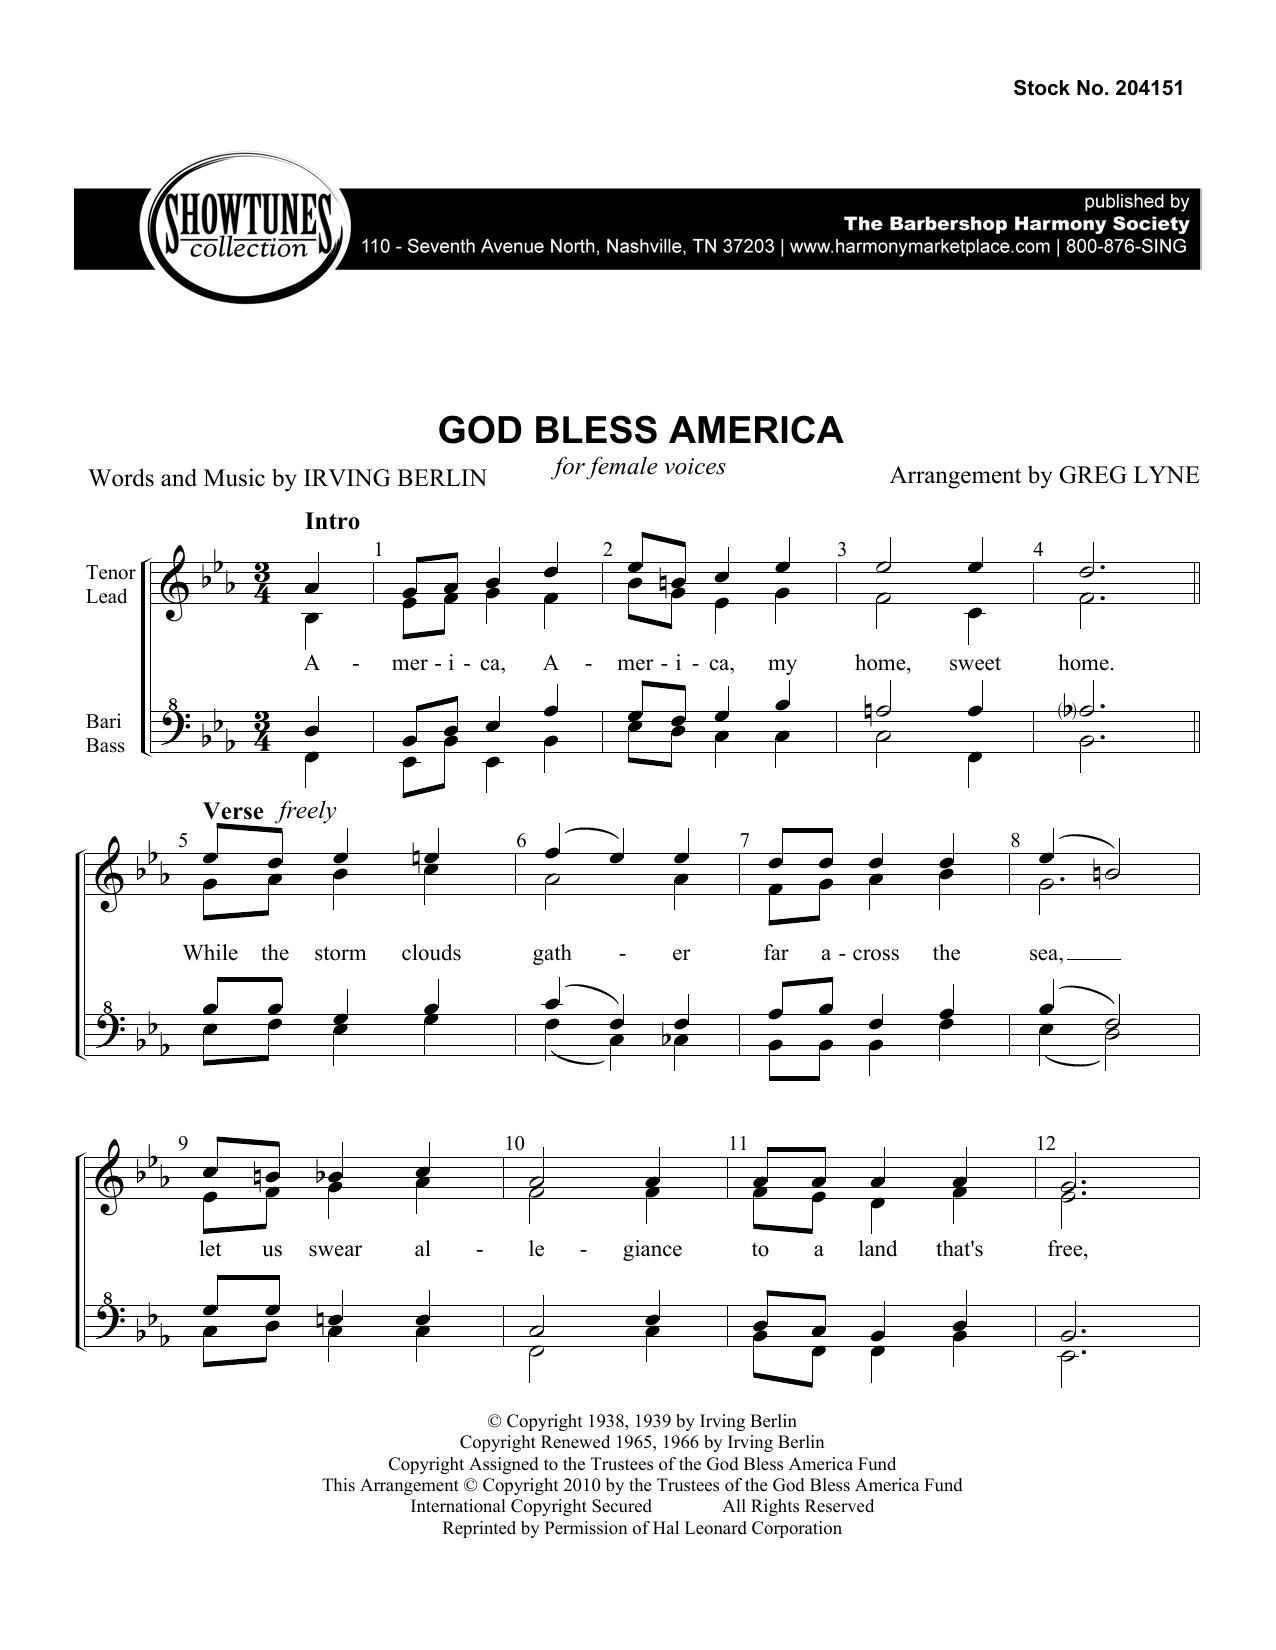 Irving Berlin God Bless America (arr. Greg Lyne) sheet music notes and chords arranged for TTBB Choir